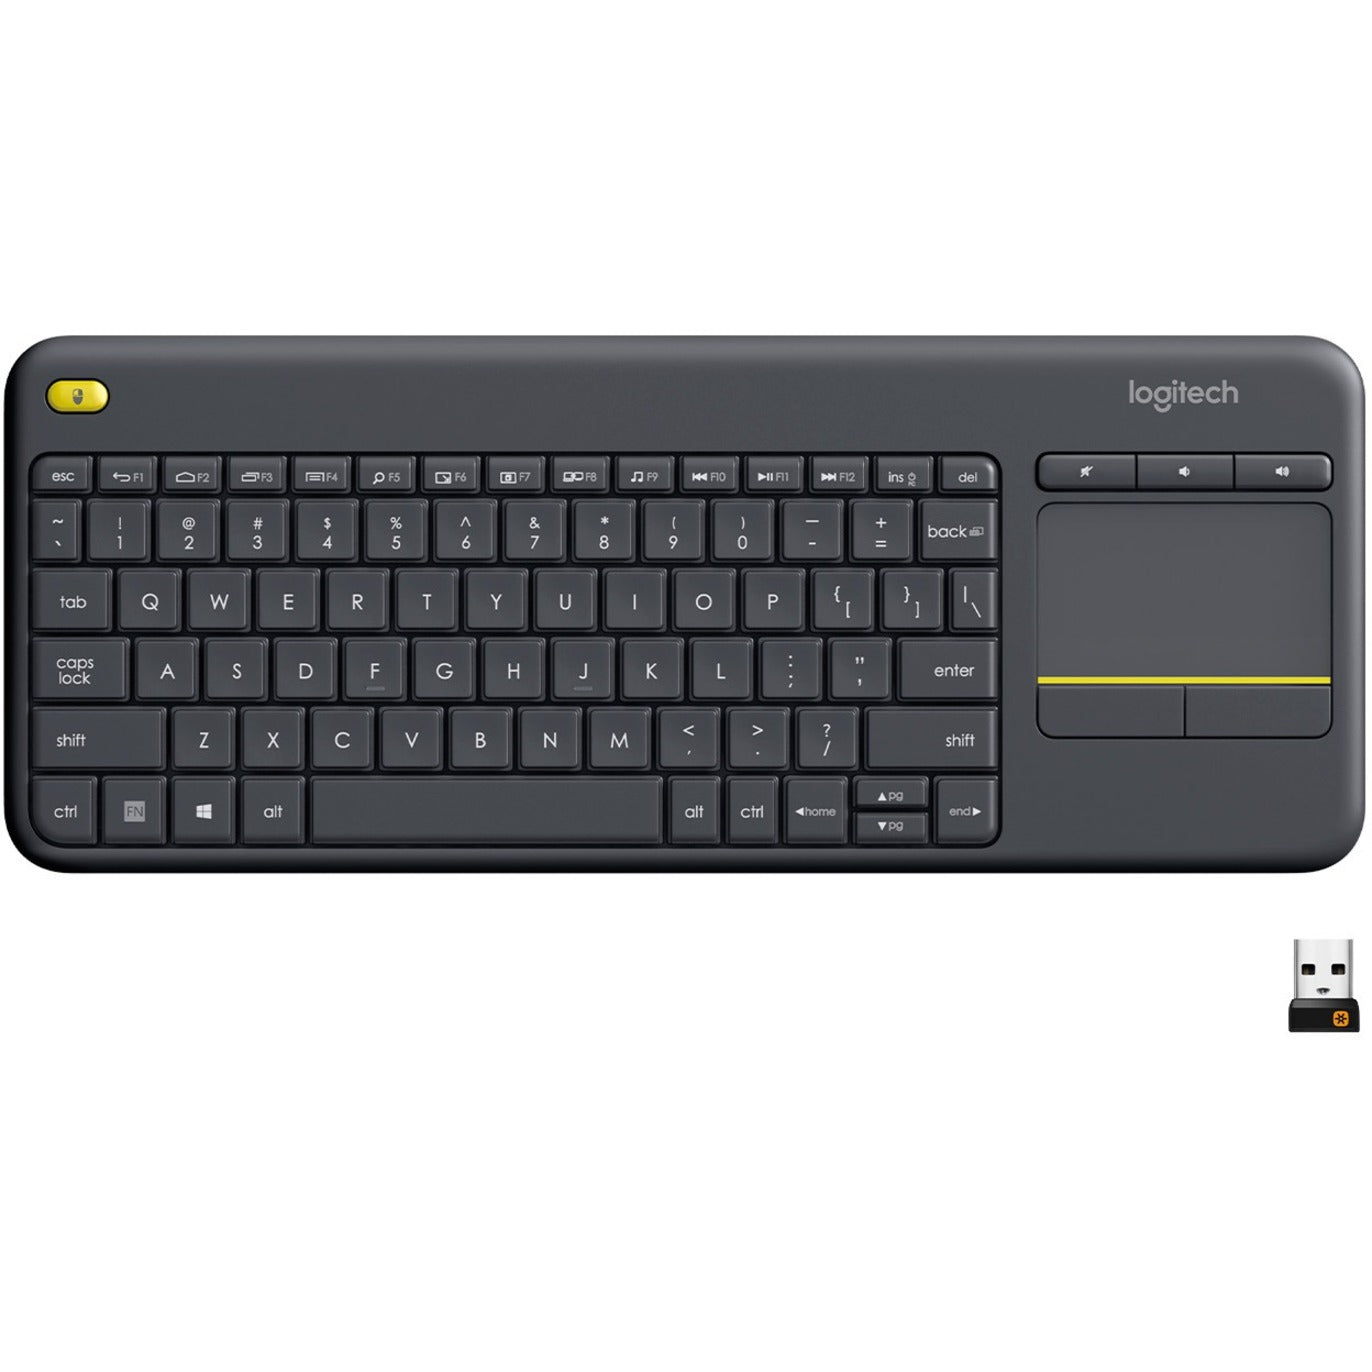 لوجيتك 920-007119 K400 بلس تاتشباد لوحة مفاتيح لاسلكية، أسود - تحكم في الصوت، تخطيط QWERTY